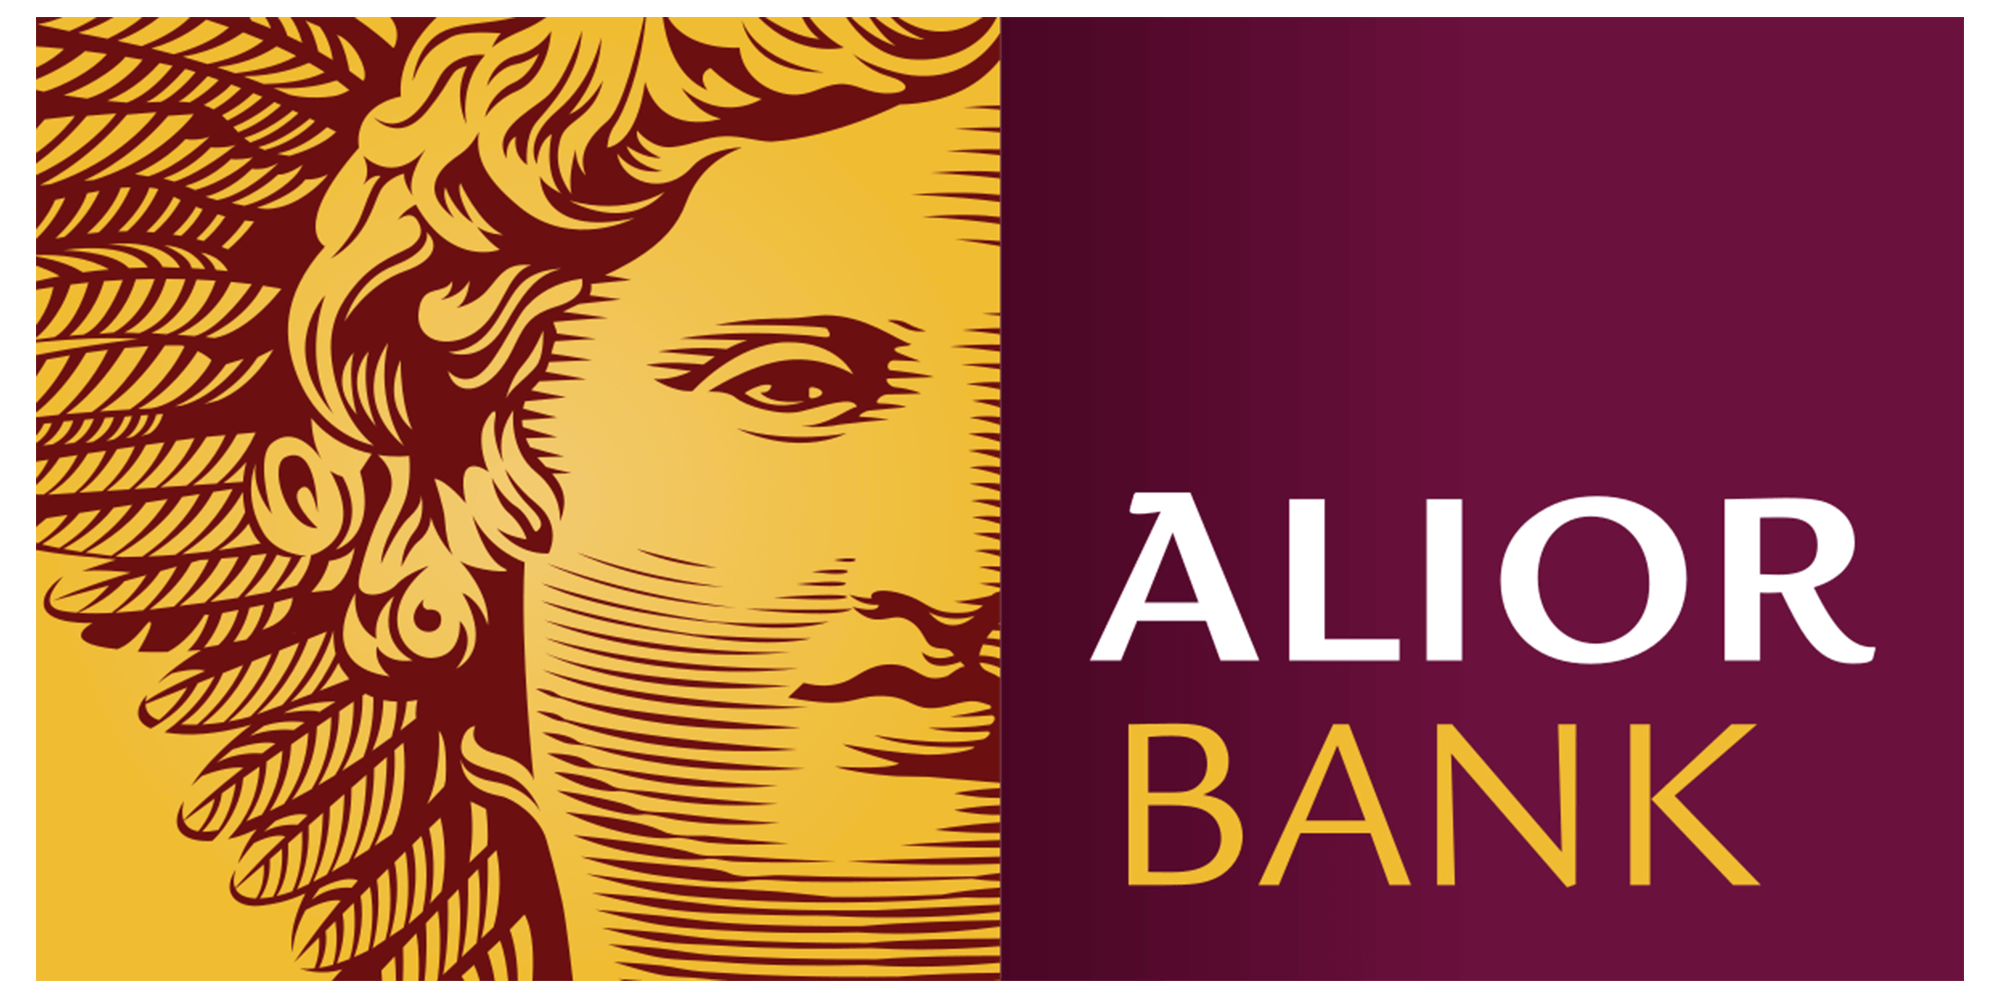  Alior Bank